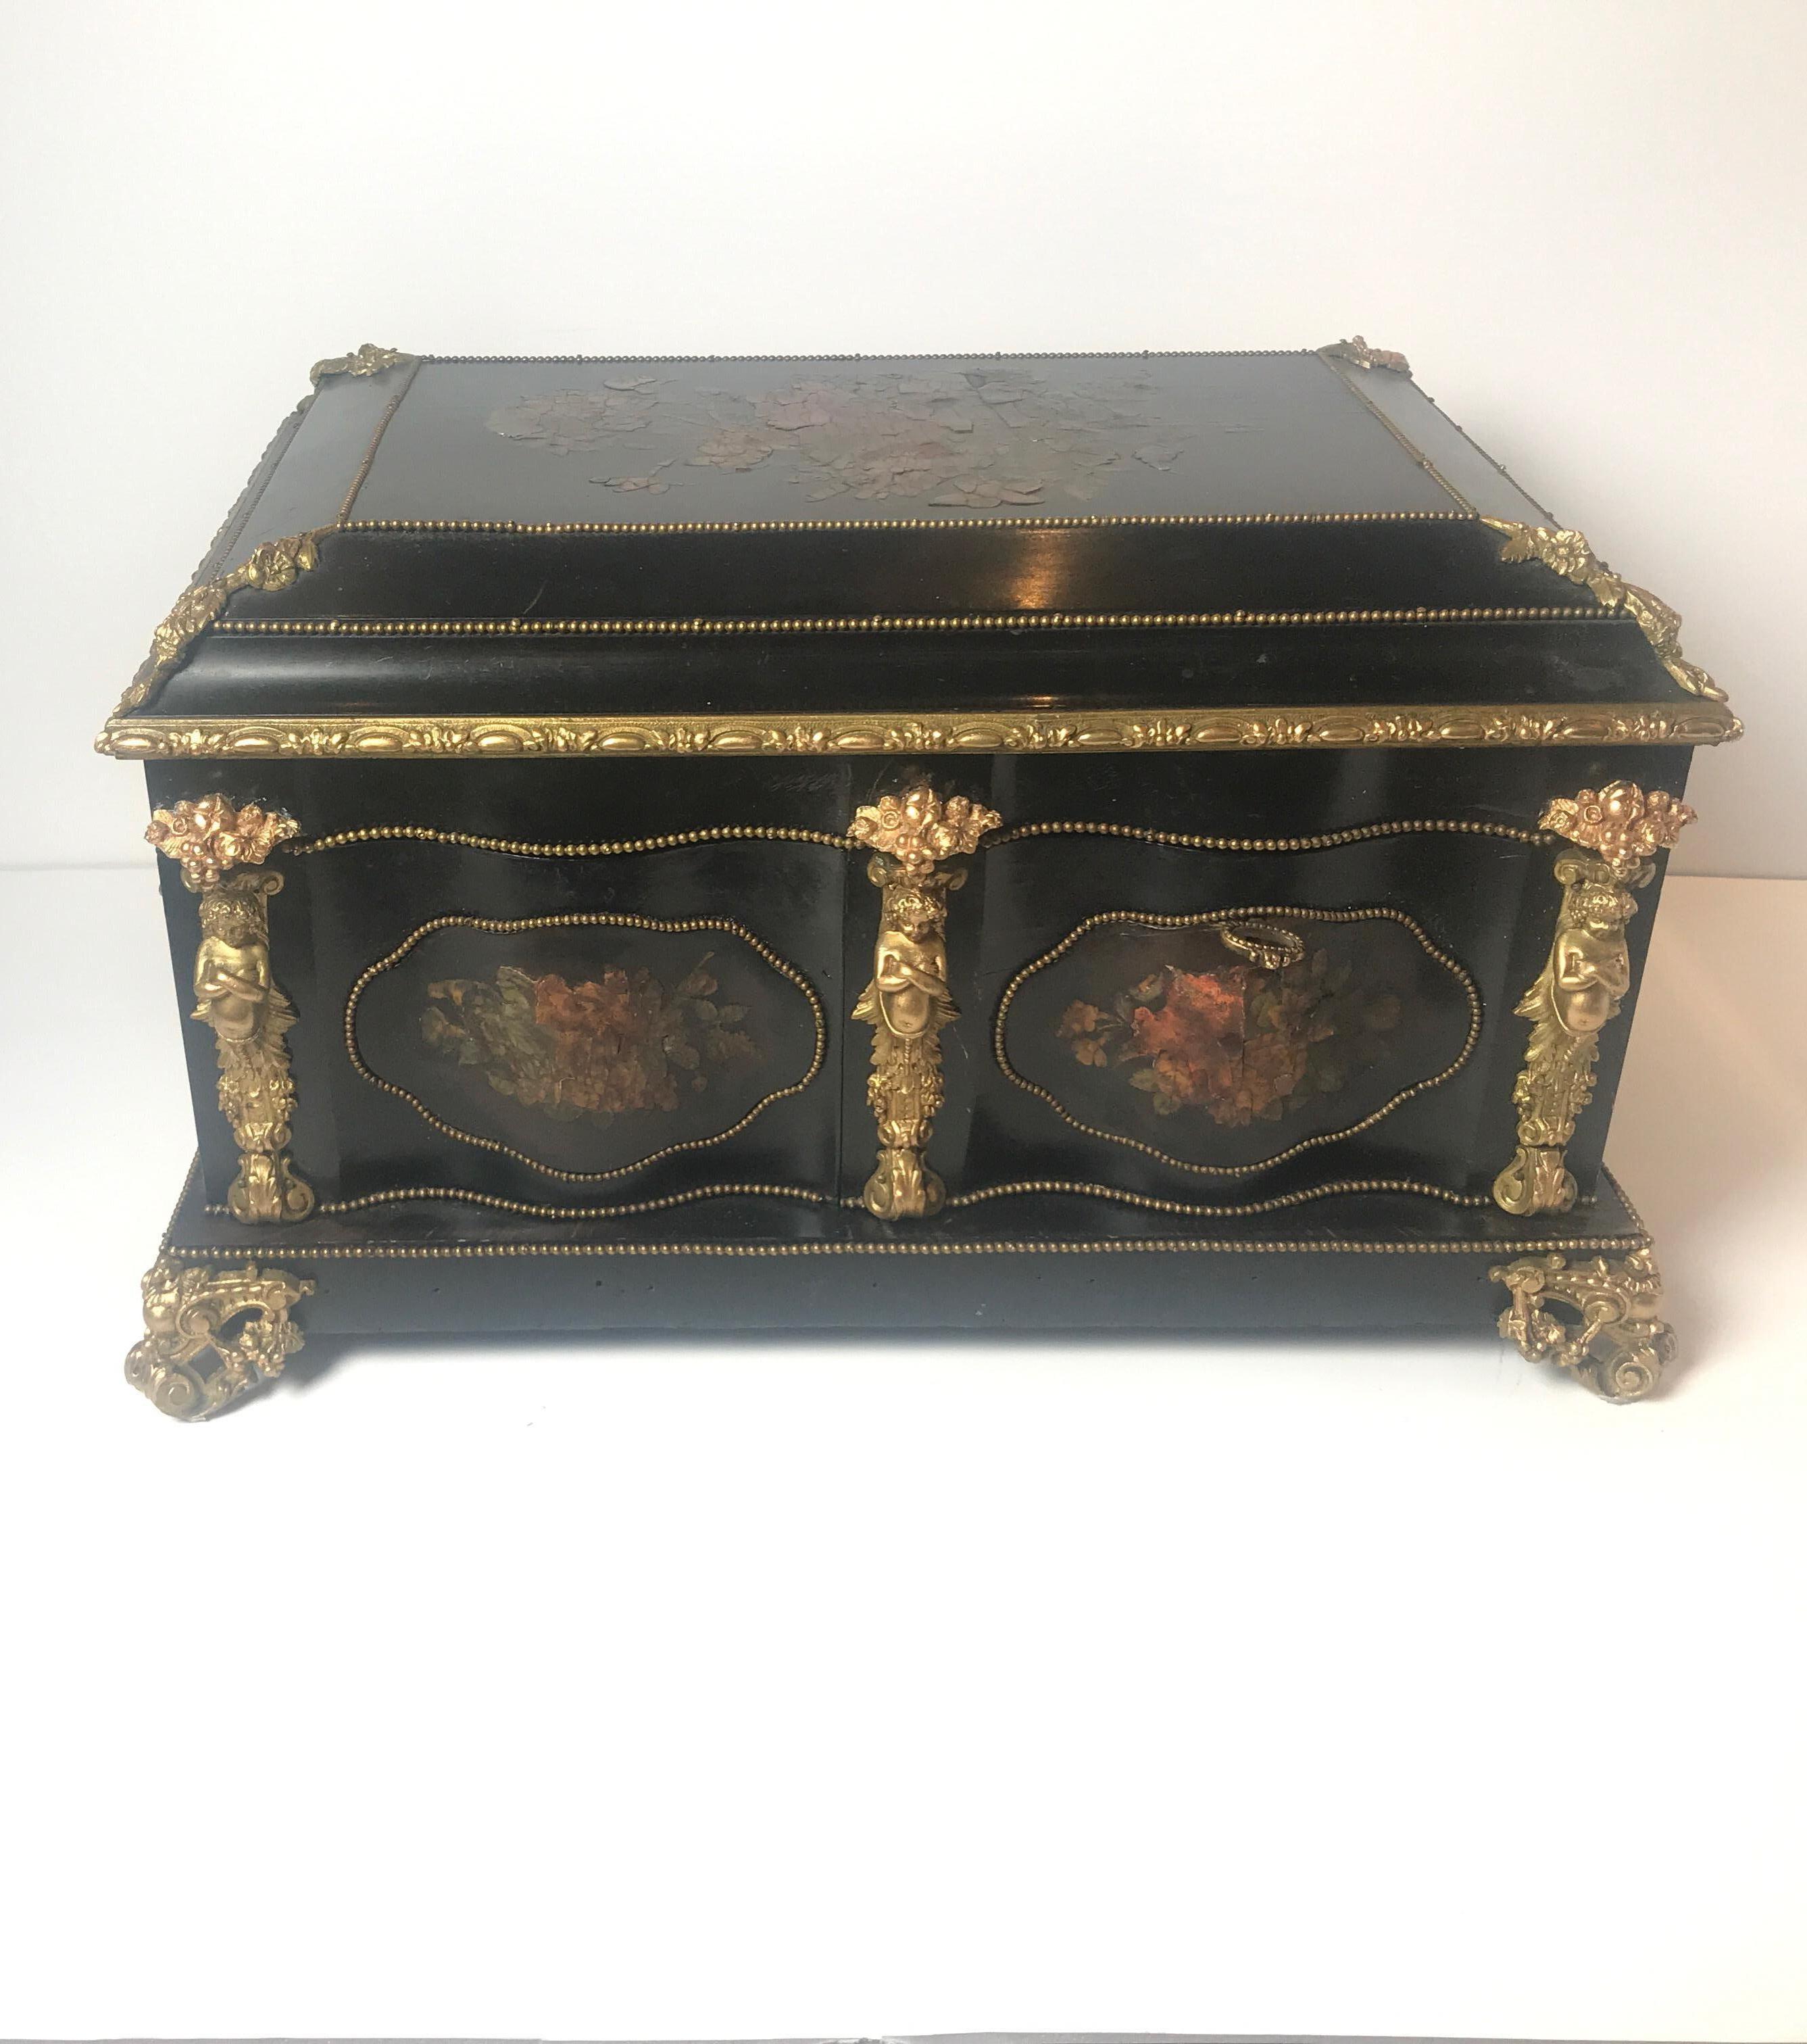 Ein reichlich gefüllter, mit Ormolu beschlagener Ebenholz-Kleiderschrank aus dem 19. Jahrhundert, bestückt mit silbervergoldeten Deckelgläsern und Nähwerkzeugen. Die Punzen scheinen französisch zu sein. Die Innenausstattung mit Spiegel und